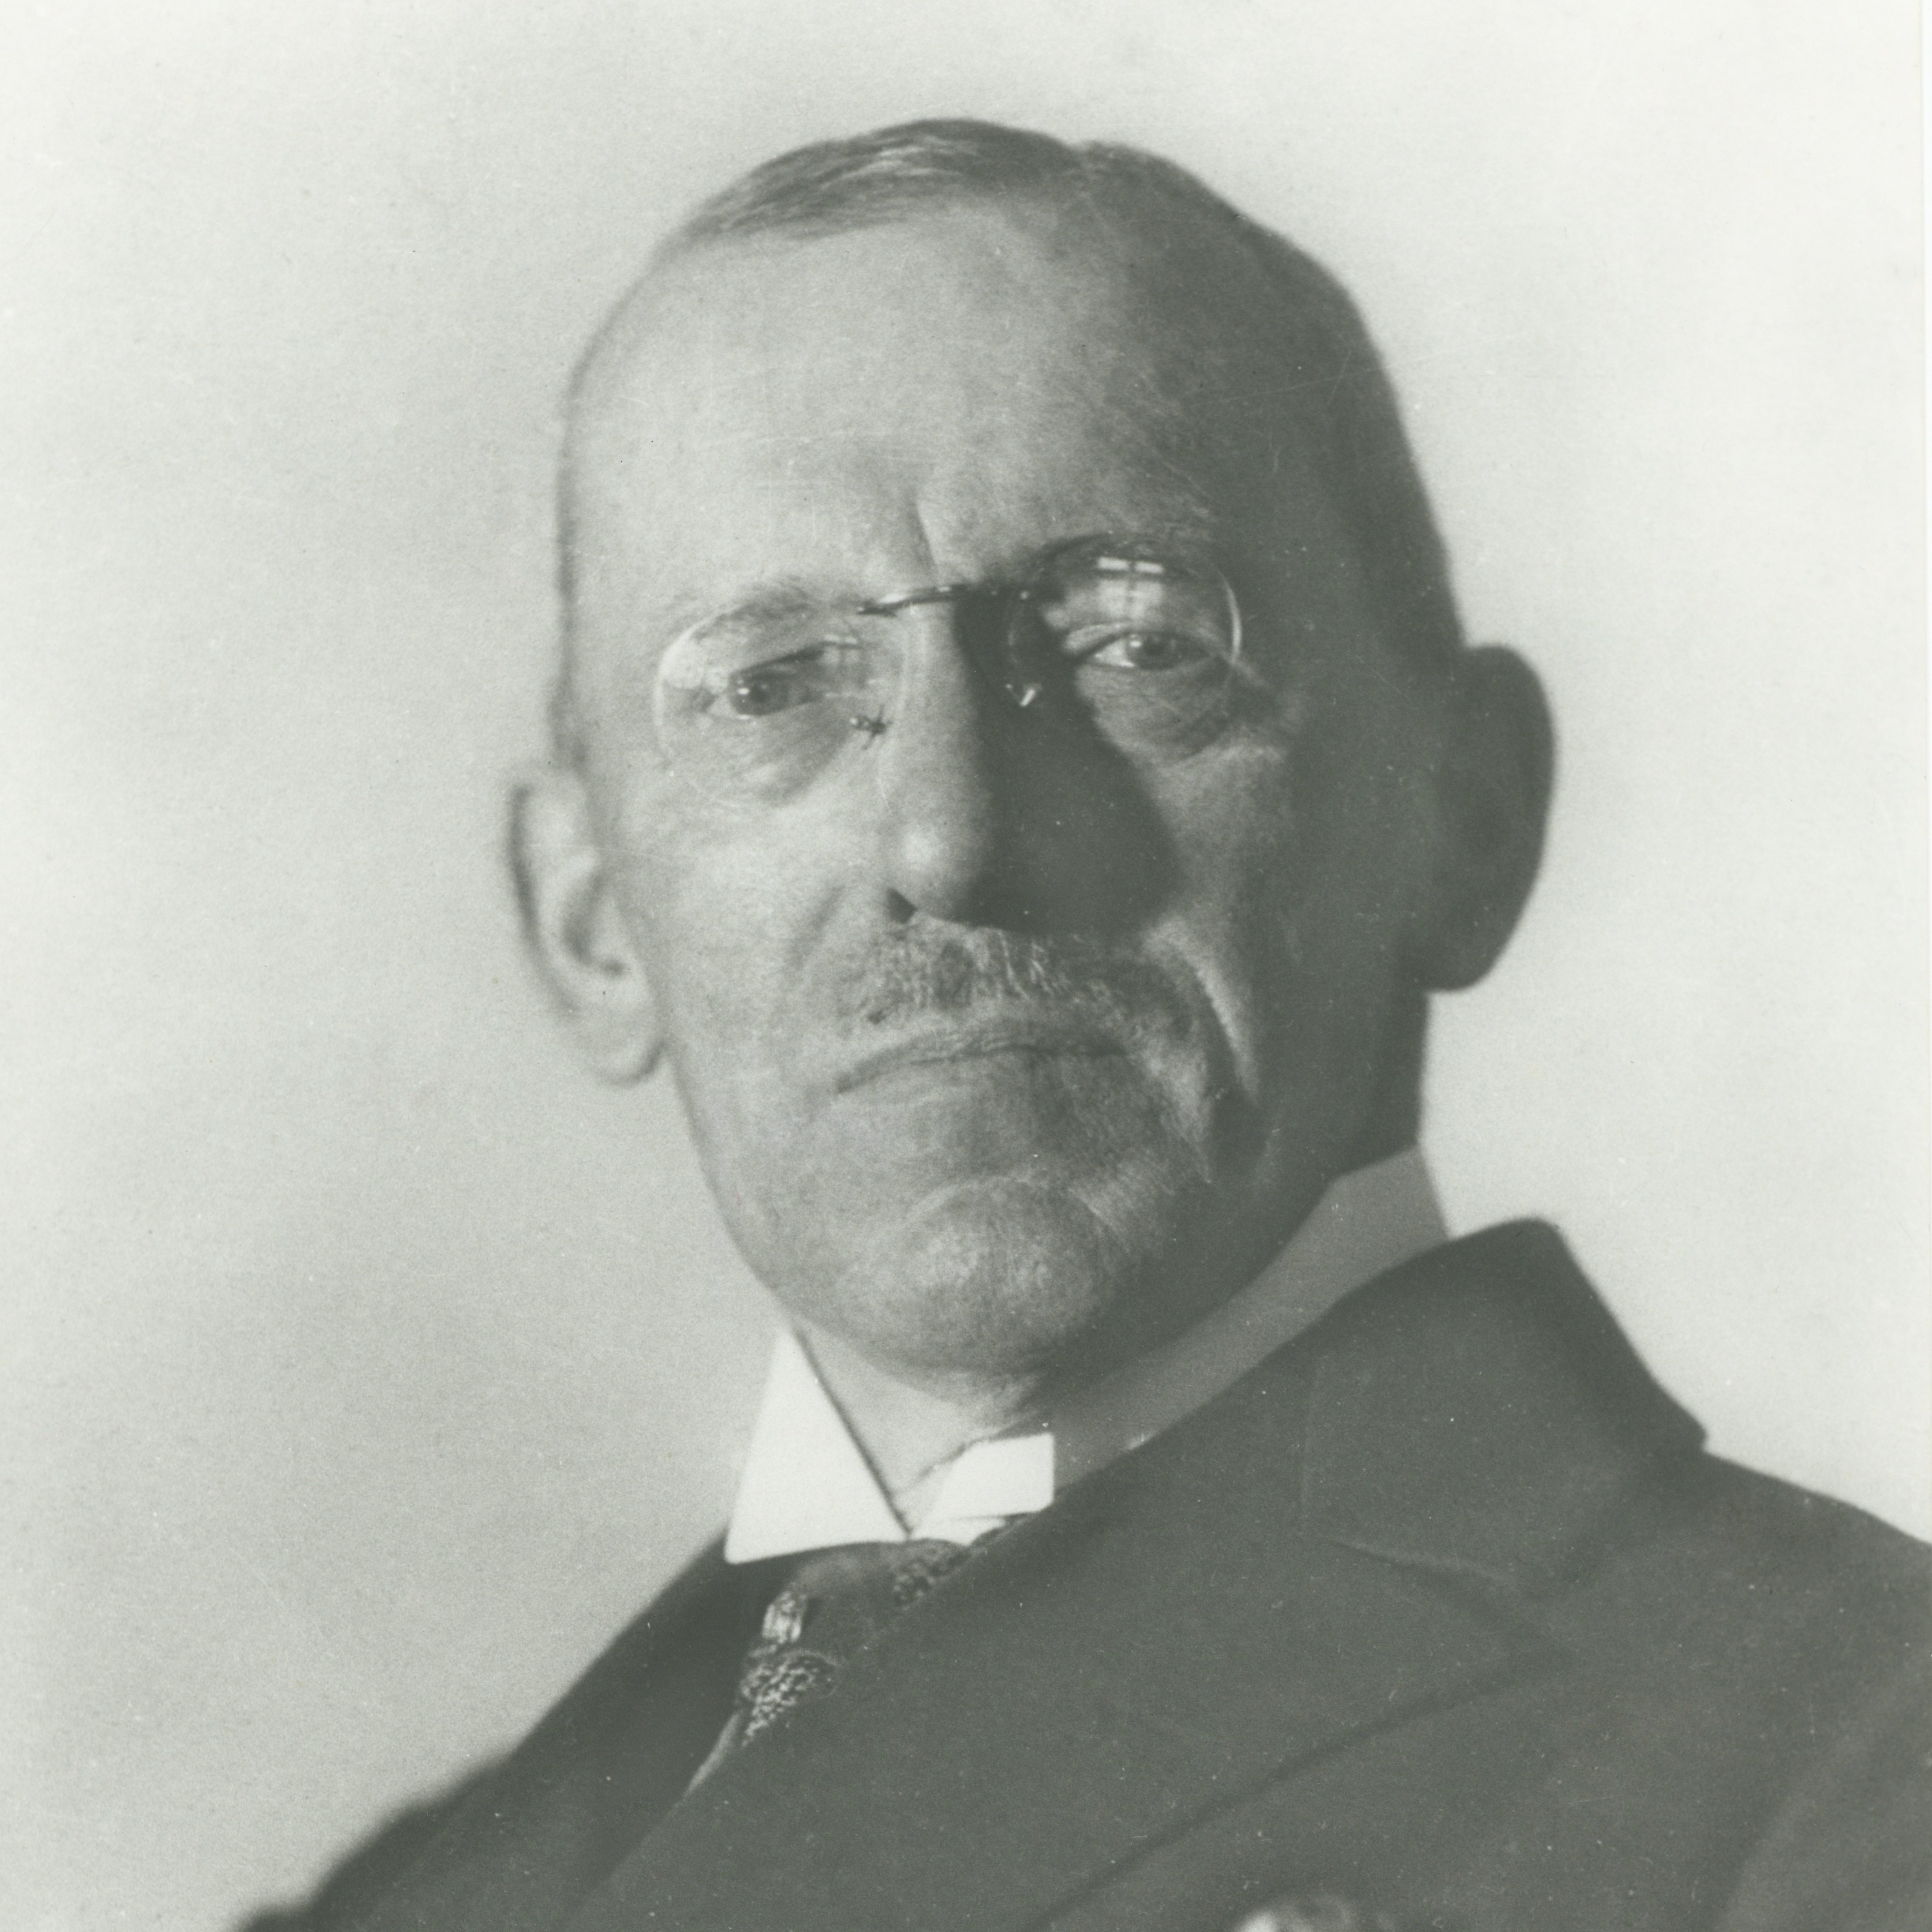 Doktor Max Johannes Weger